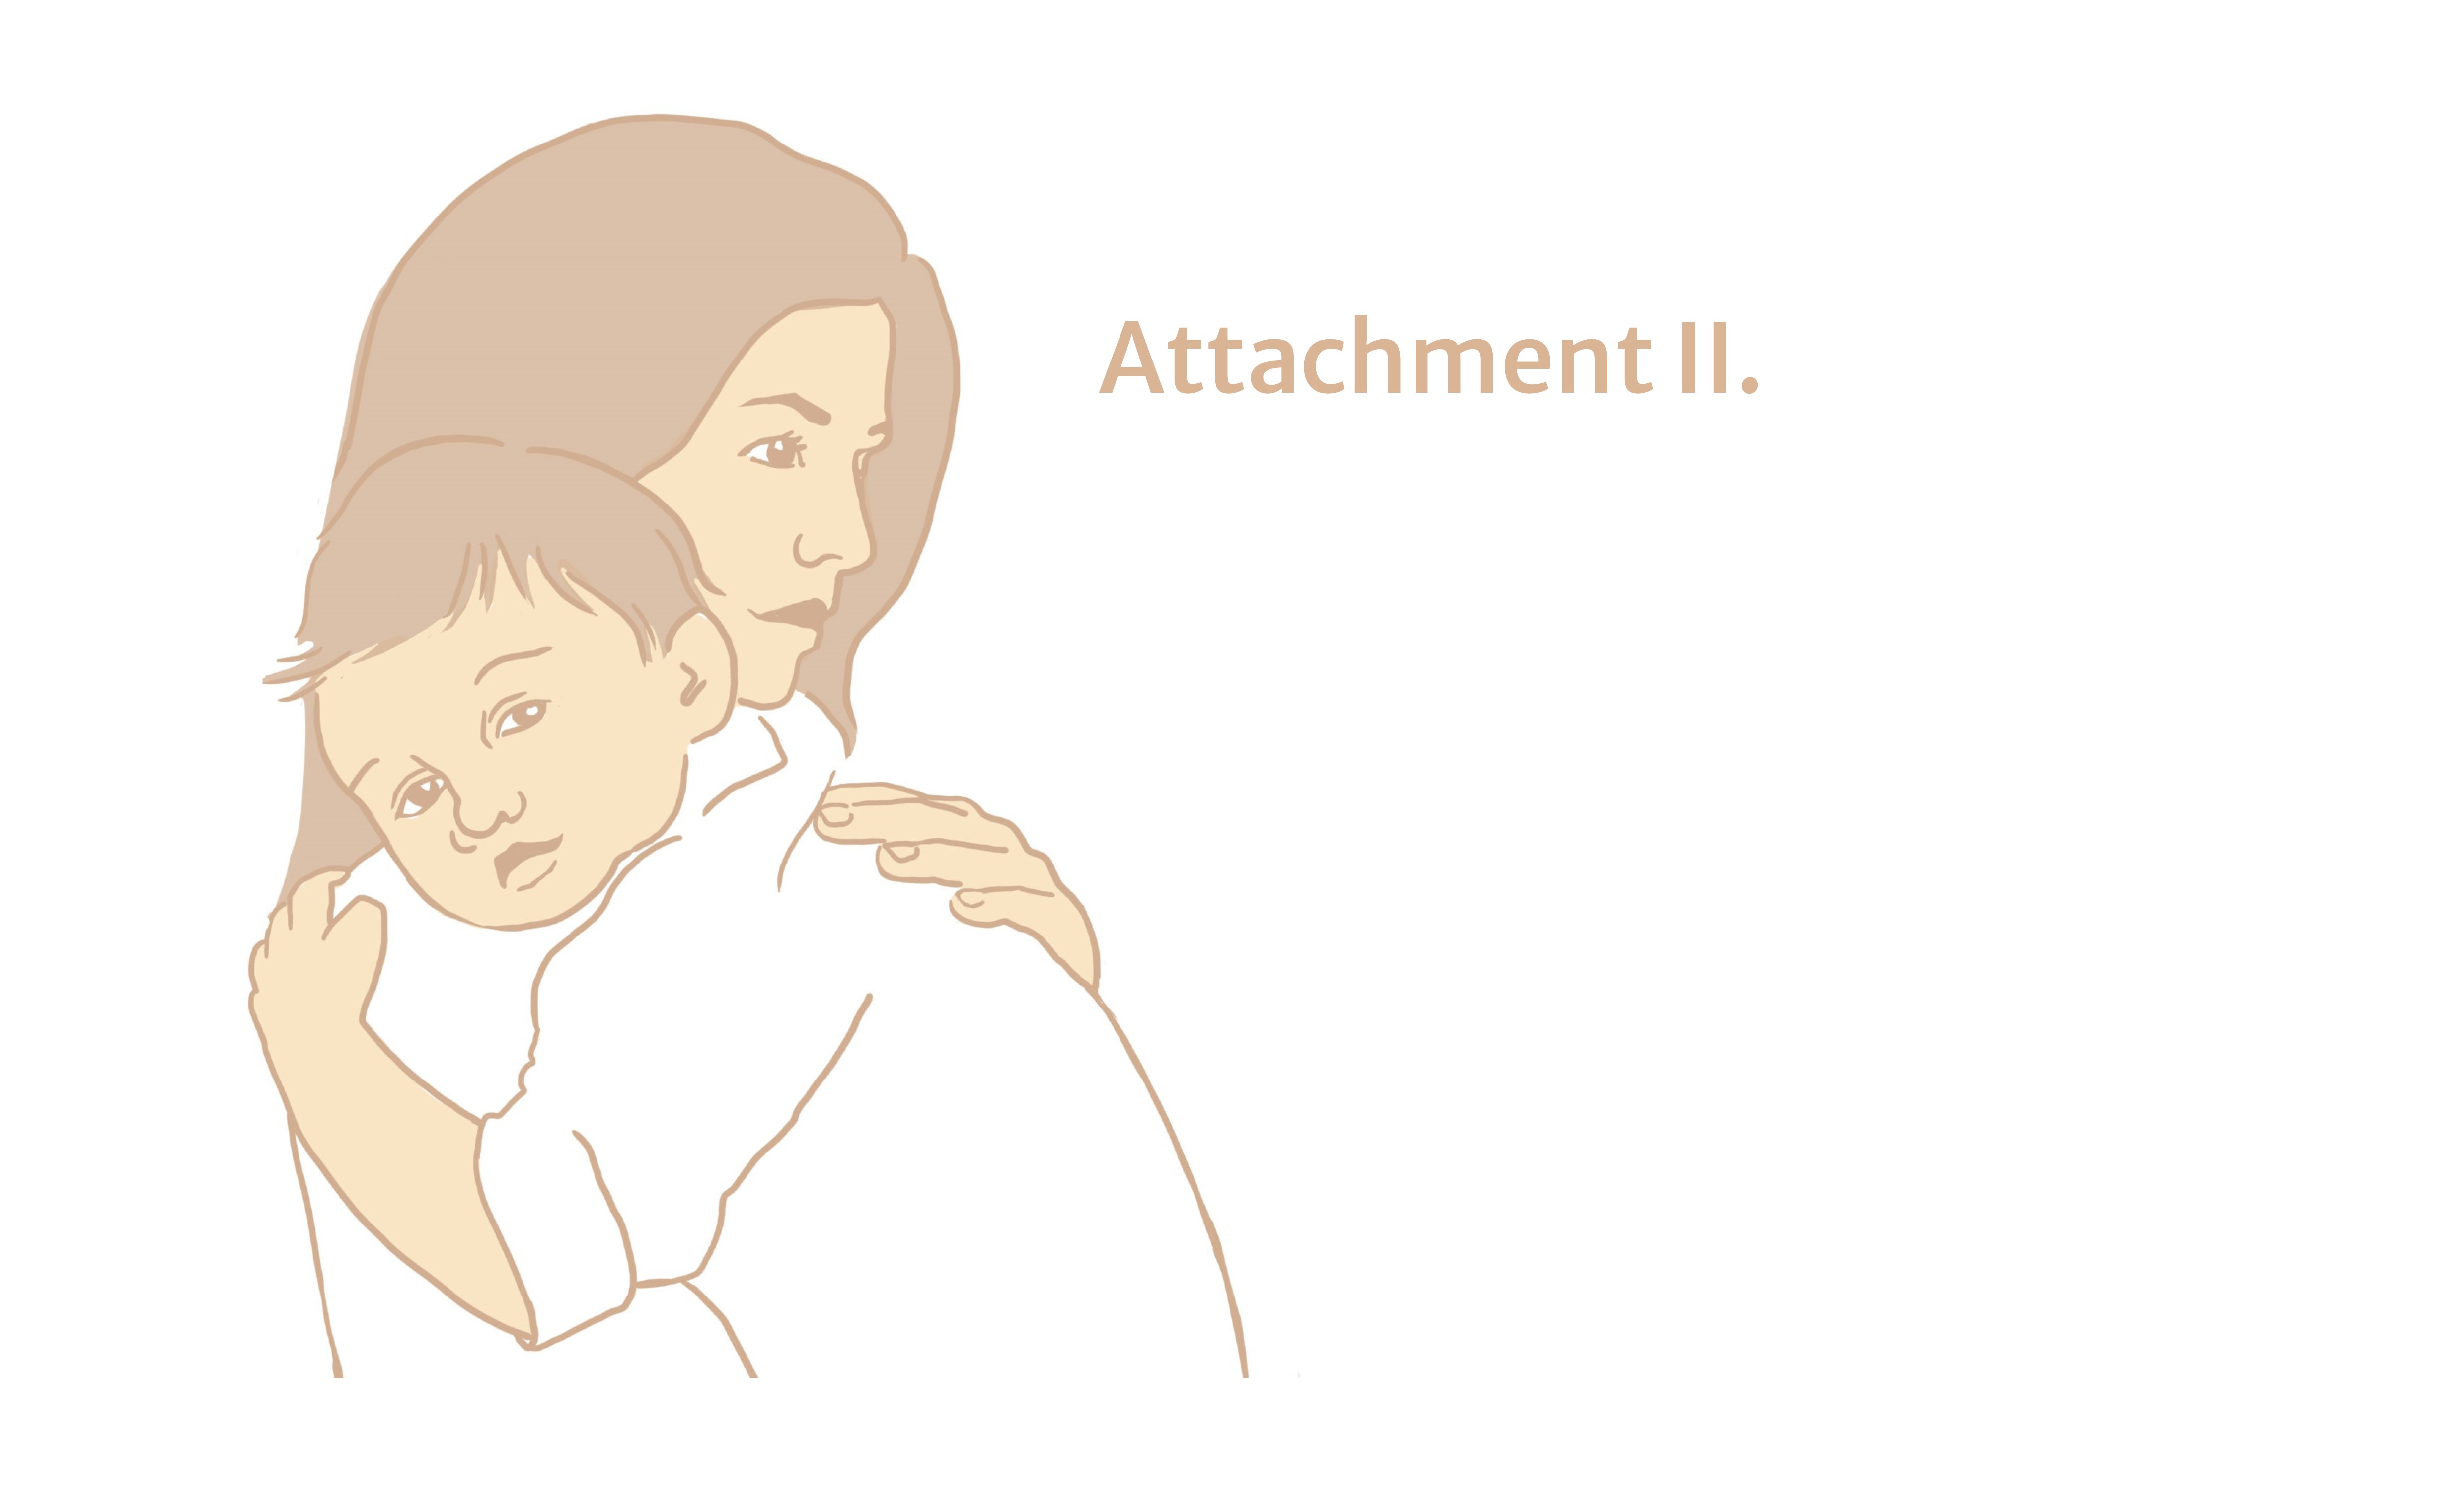 Attachment 2